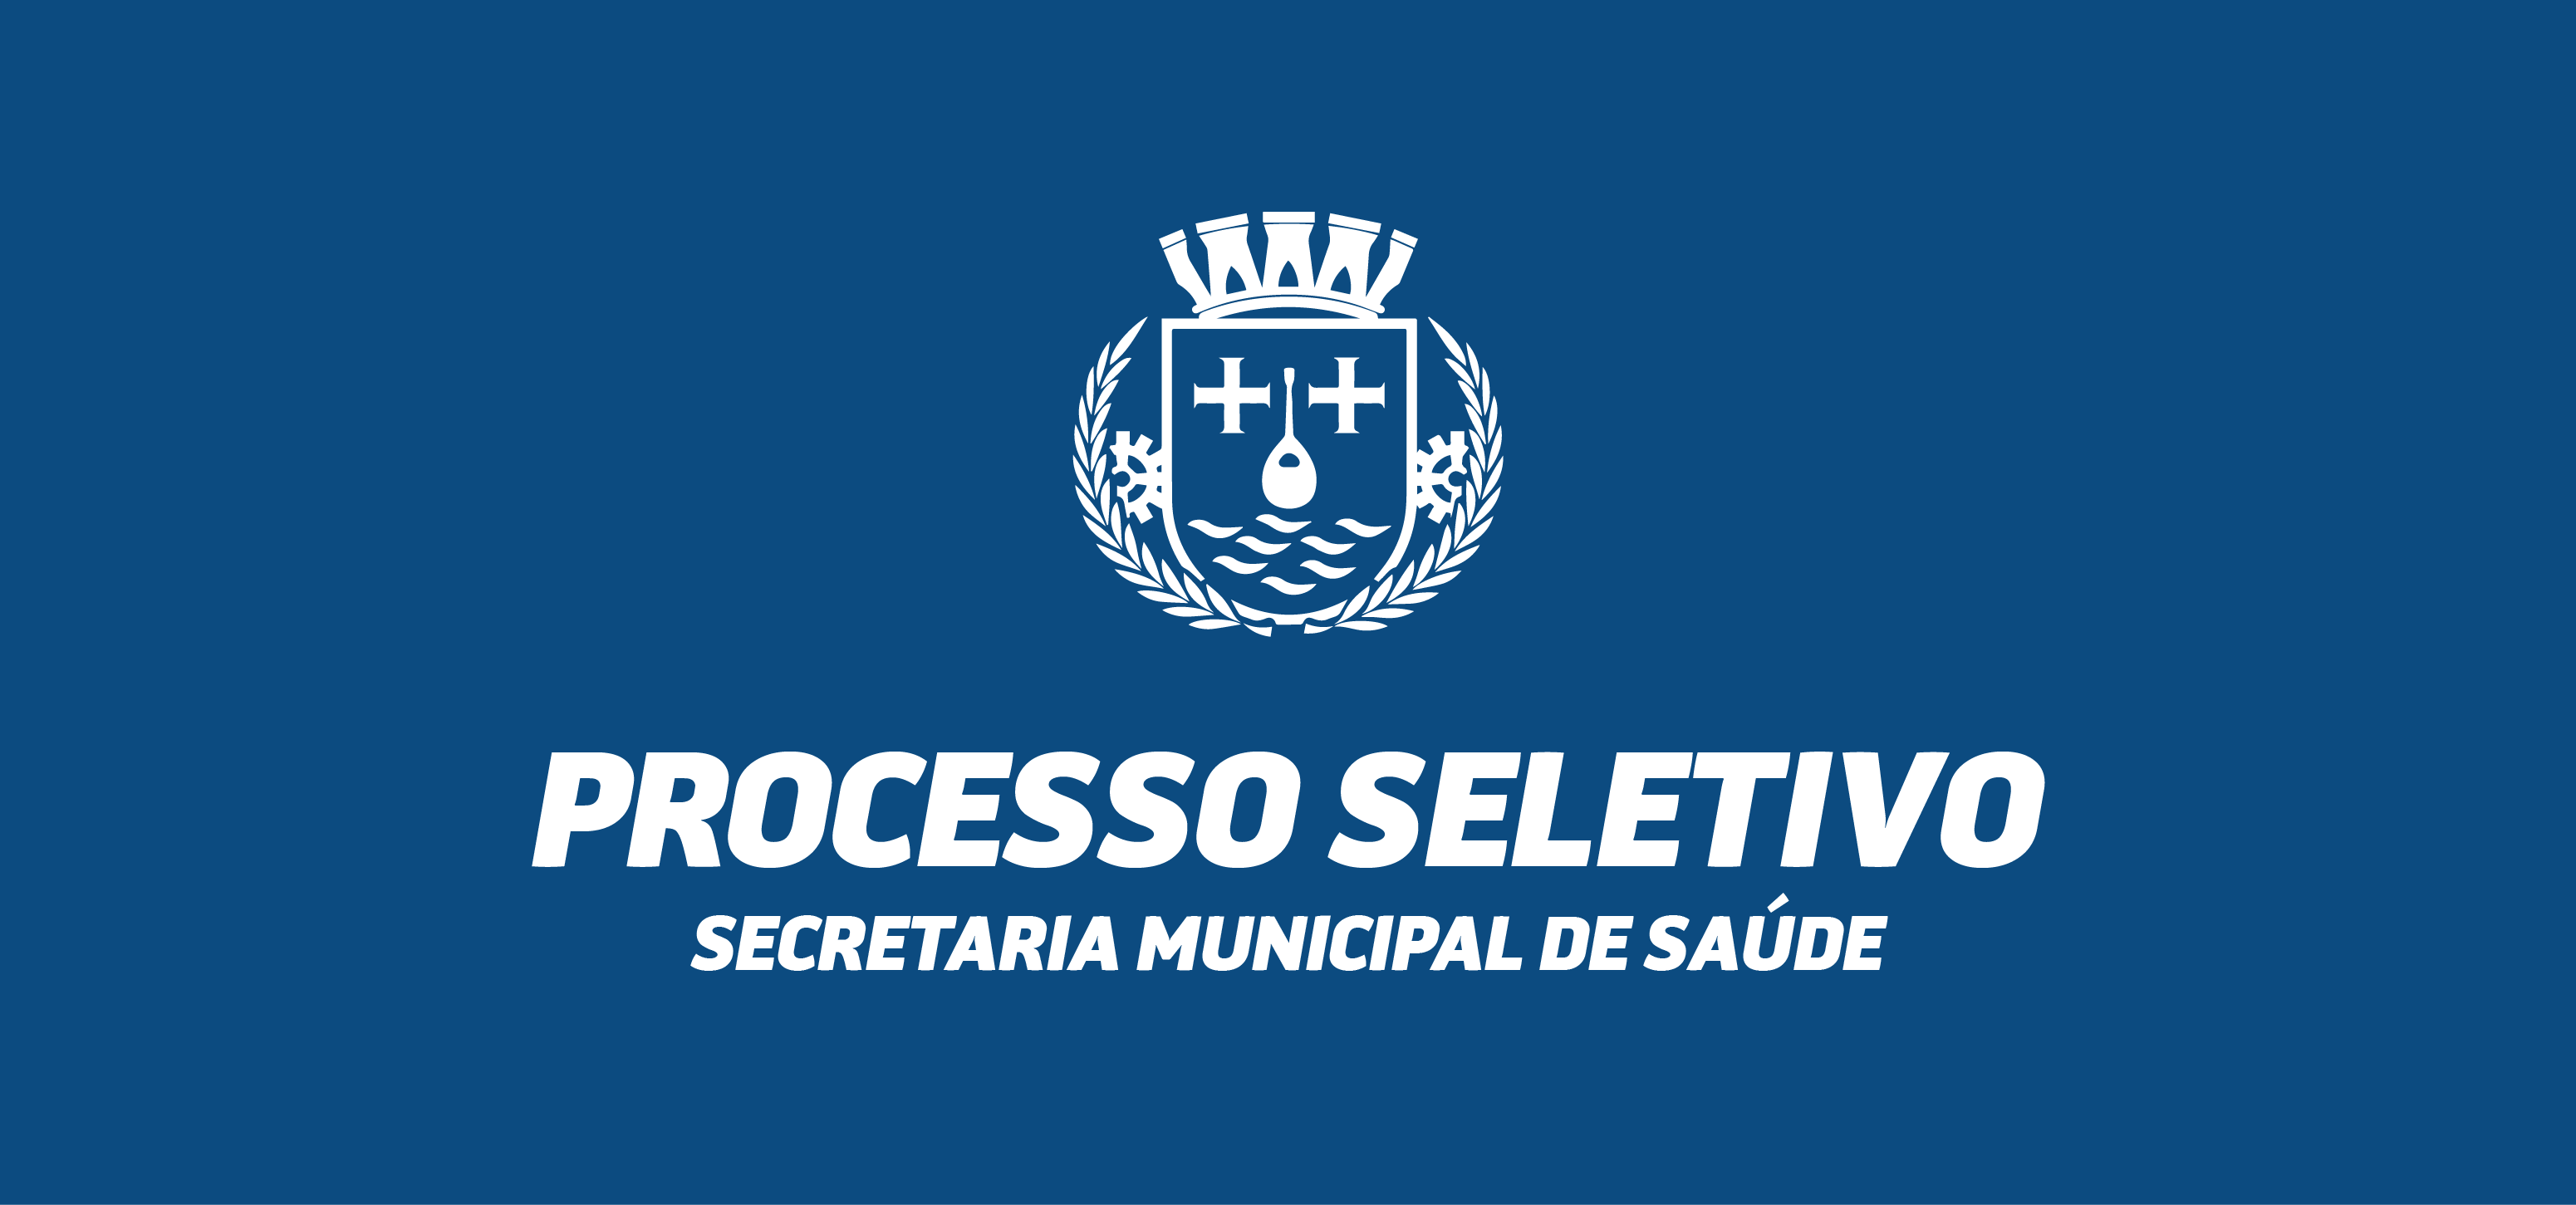 Processo Seletivo Secretaria Municipal de Saúde